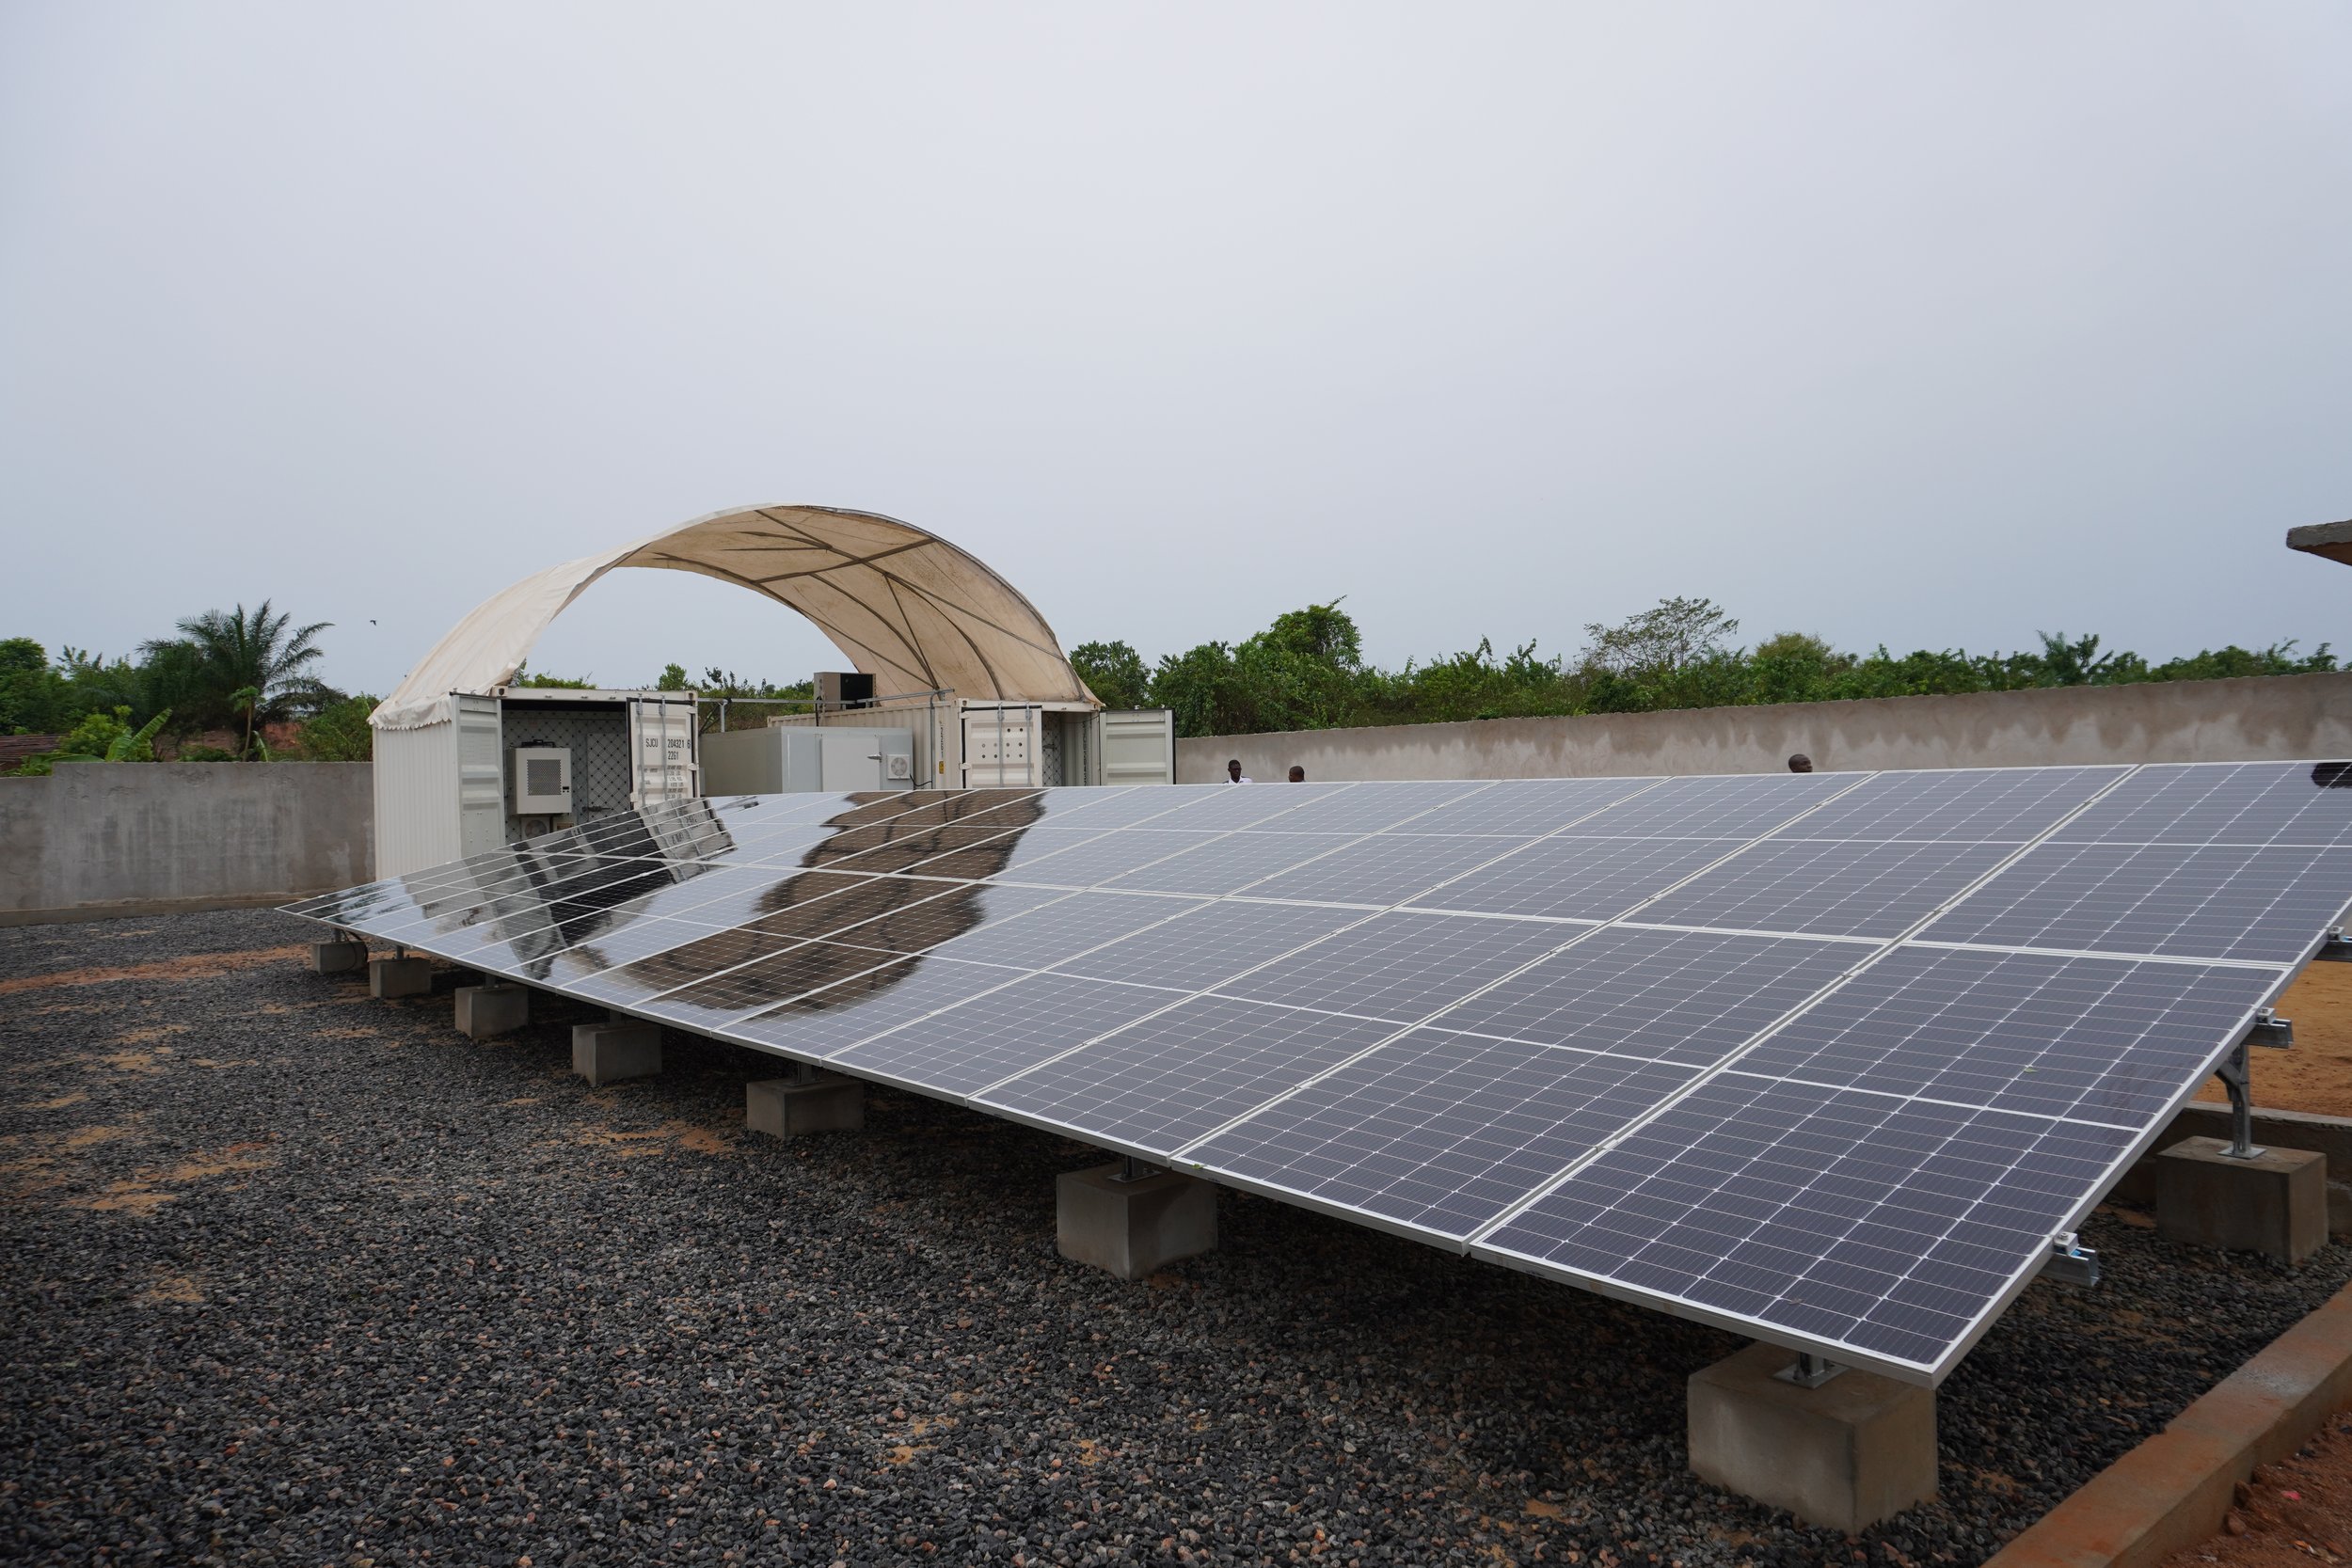  Le complexe solaire de Grand-Béréby compte de deux rangées de paneaux solaires (sur la photo, on ne voit que celui de droite), une salle pour les batteries et machines (à gauche), une machine à glace avec chambre froide (au milieu) et un congélateur